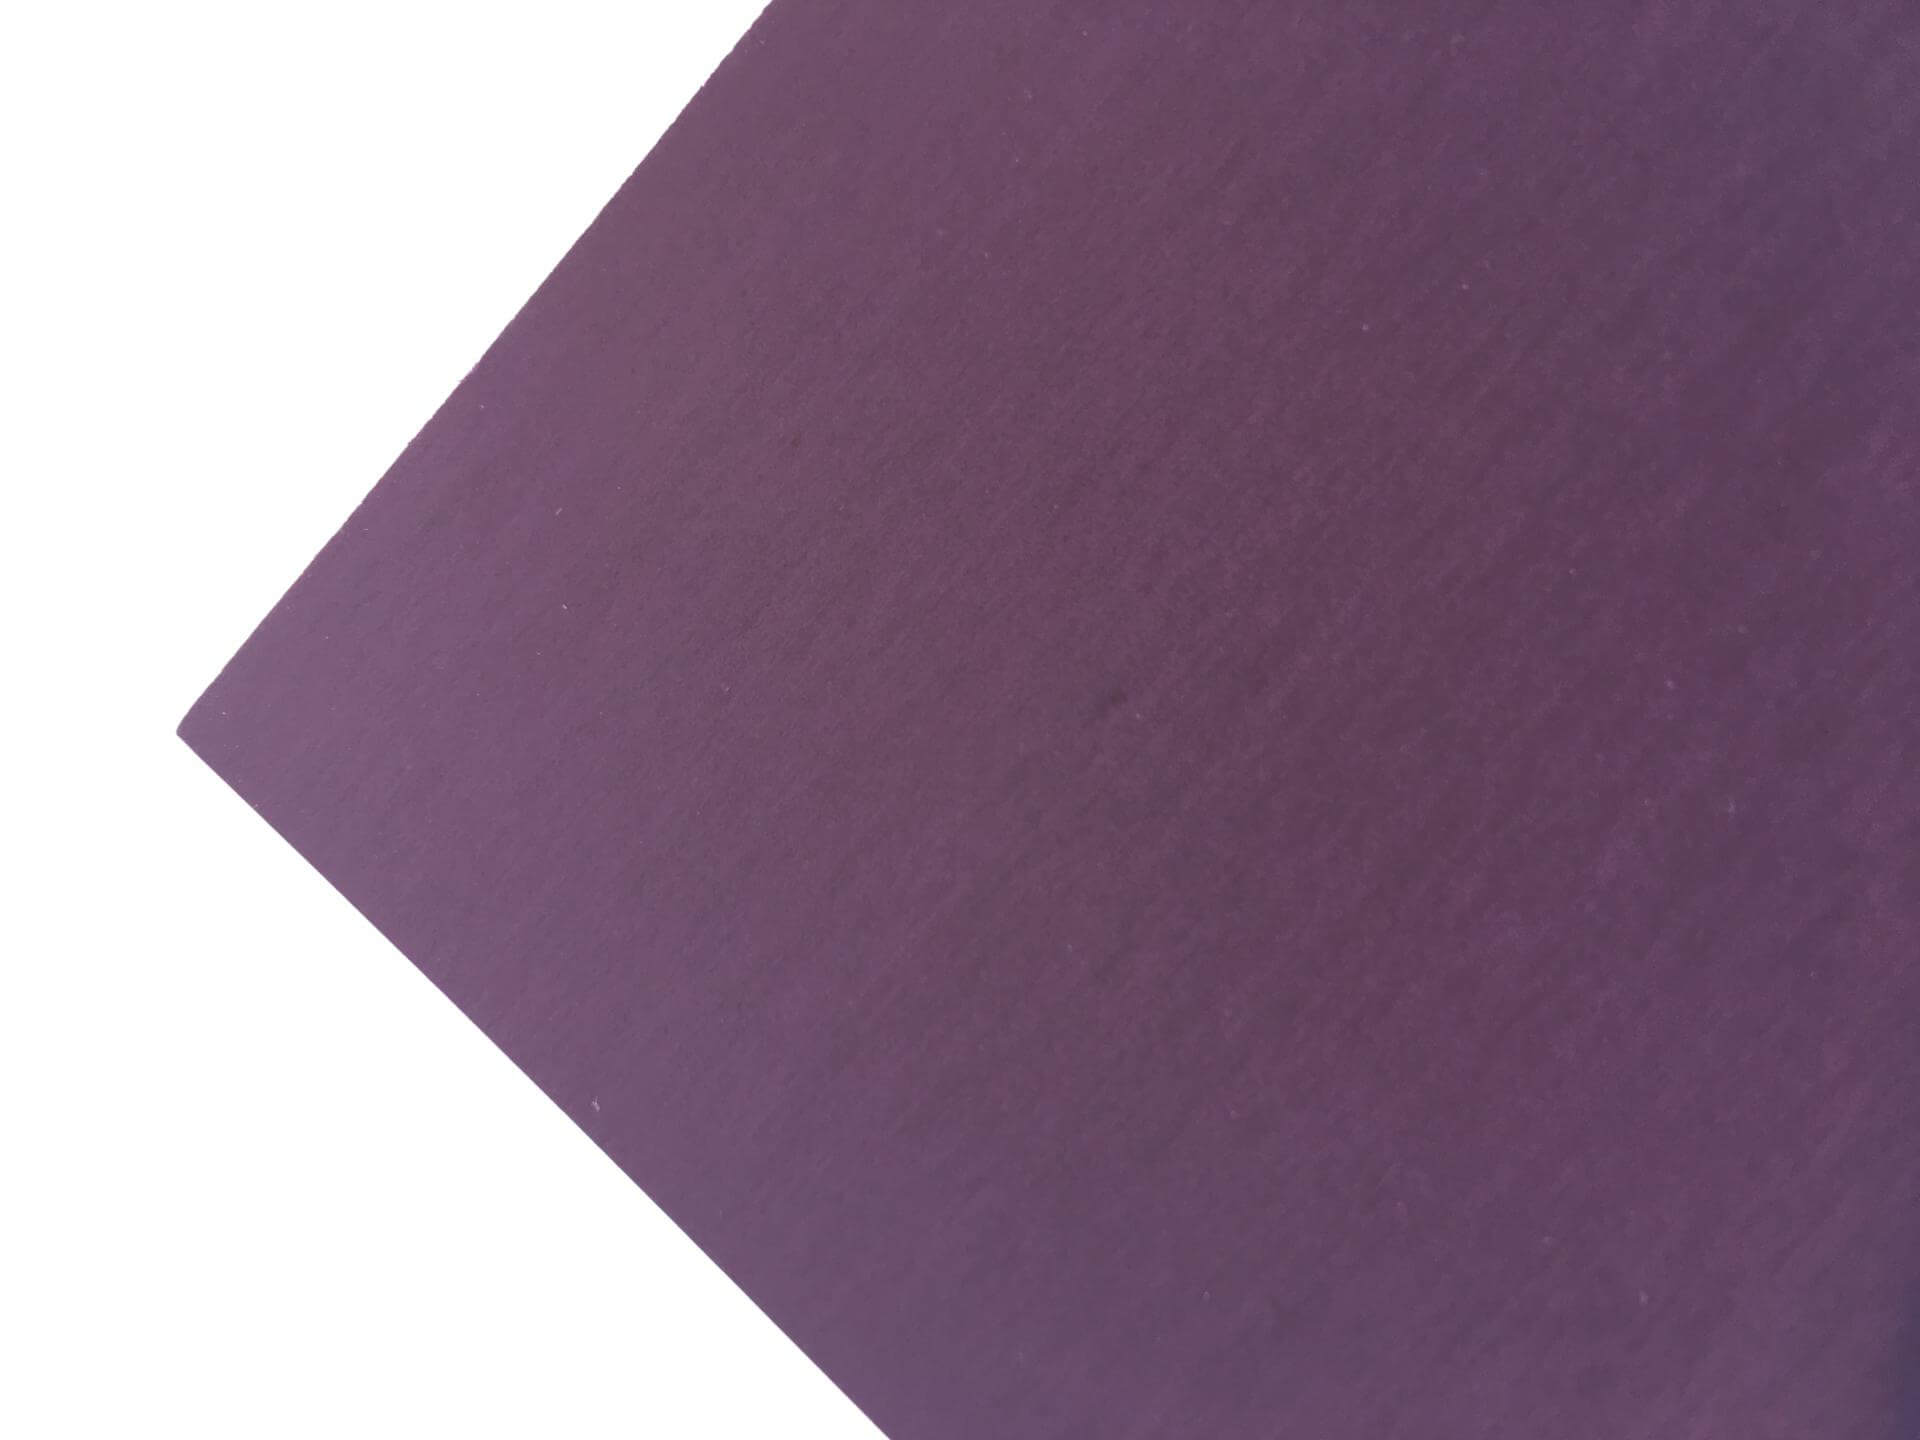 Plike 2s purple